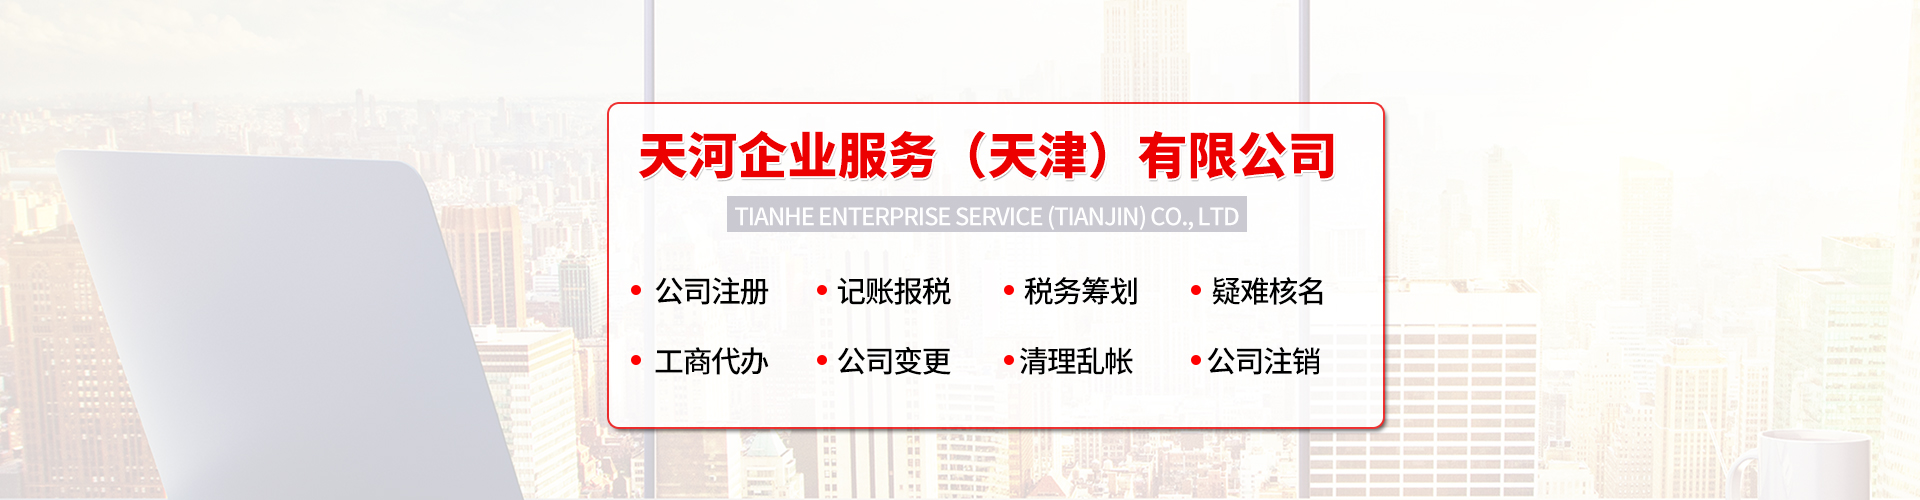 天津注册公司 申请教学办学材料及流程 工程专项审批一站式服务